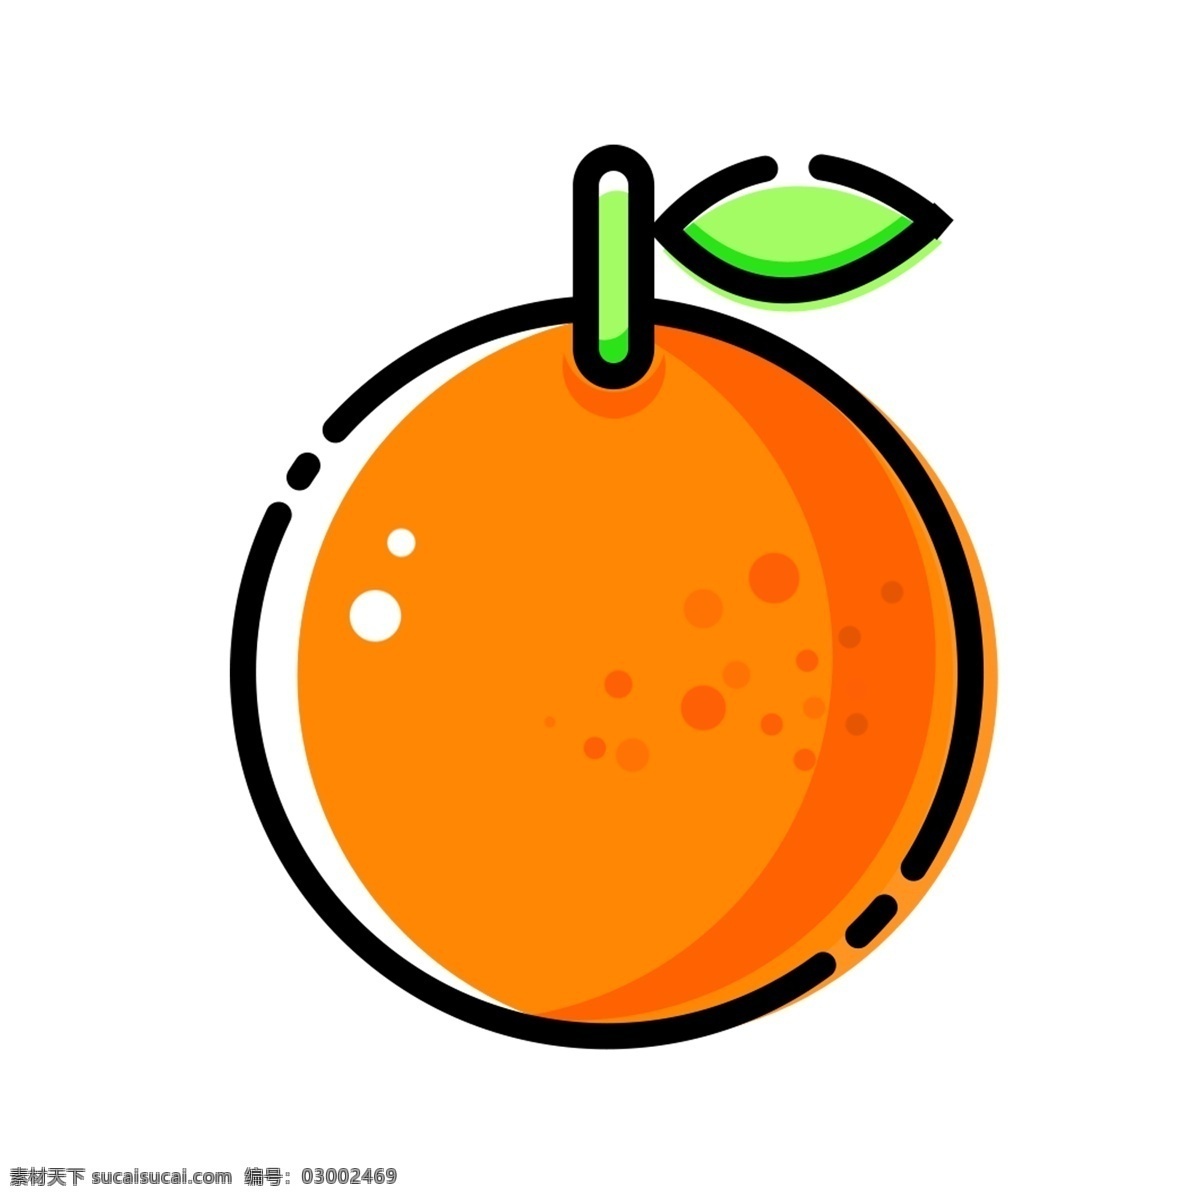 扁平化 简约 水果 橙子 卡通手绘 免 扣 图 橙子png图 橙子免扣图